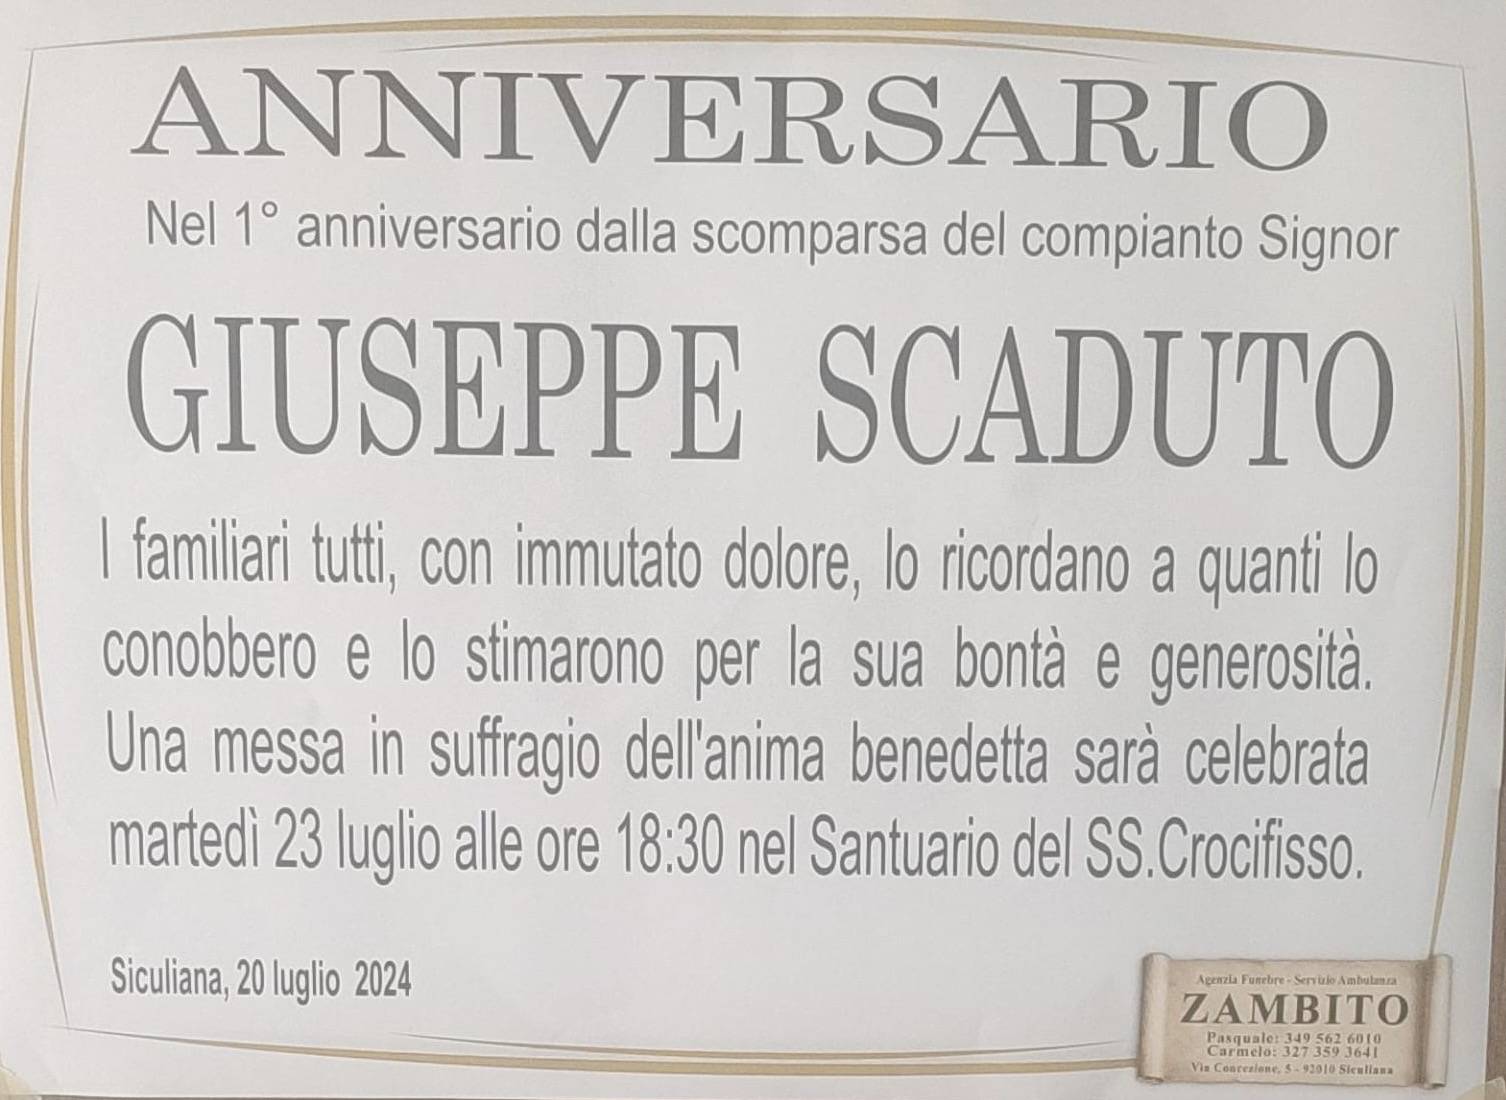 Giuseppe Scaduto